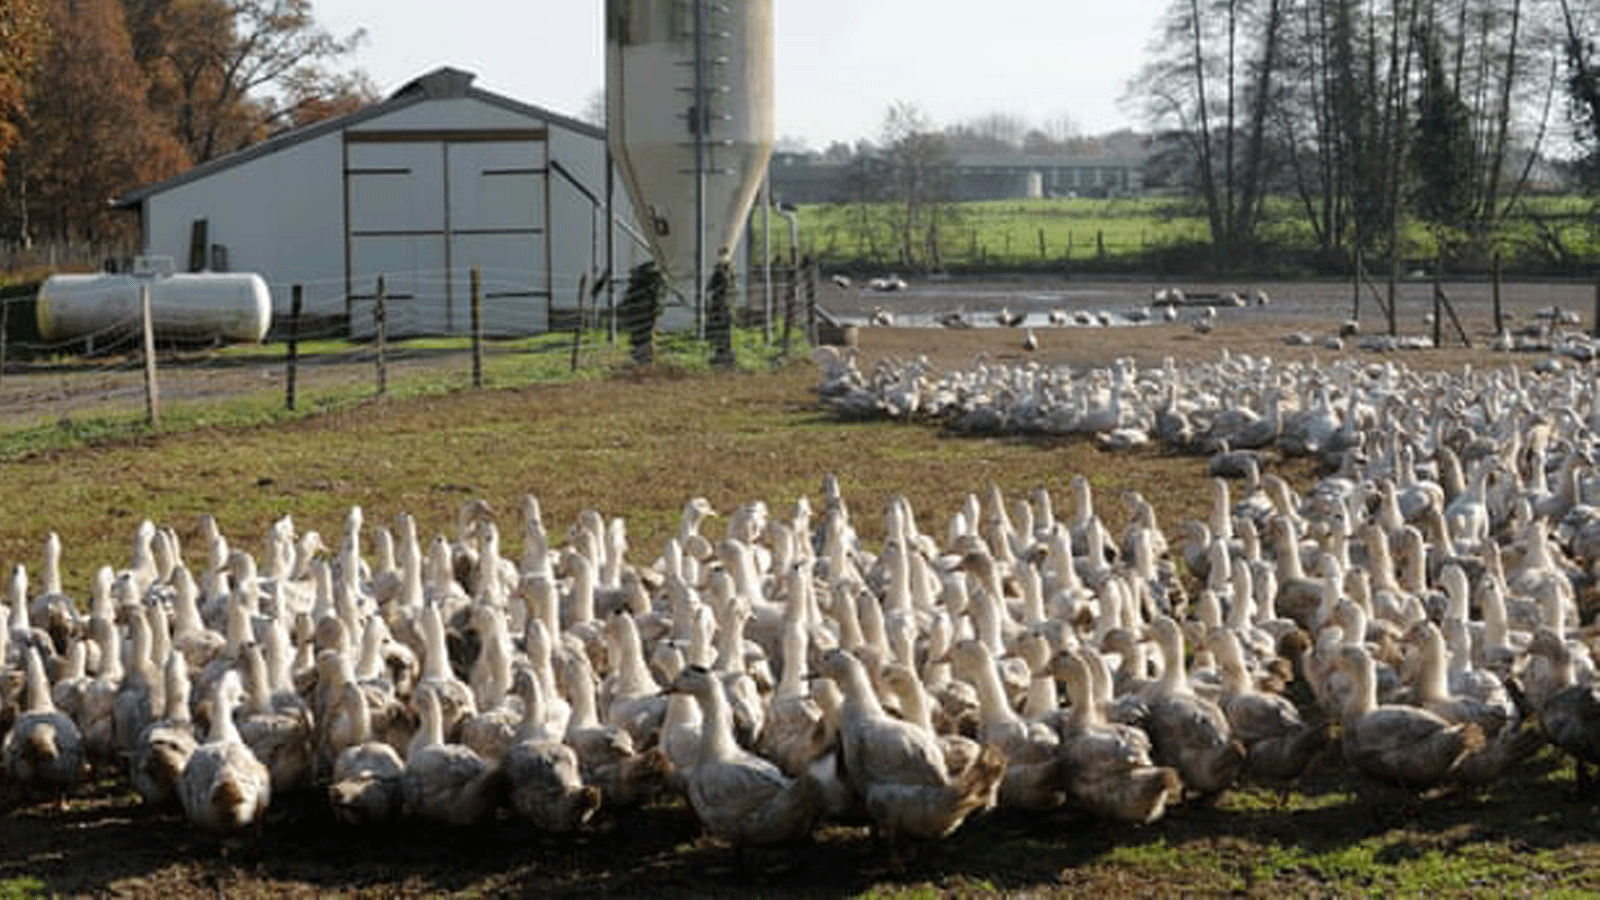 لقطة لمزرعة بط في في شمال فرنسا حيث ينتشر انفلونزا الطيور أنحاء أوروبا.